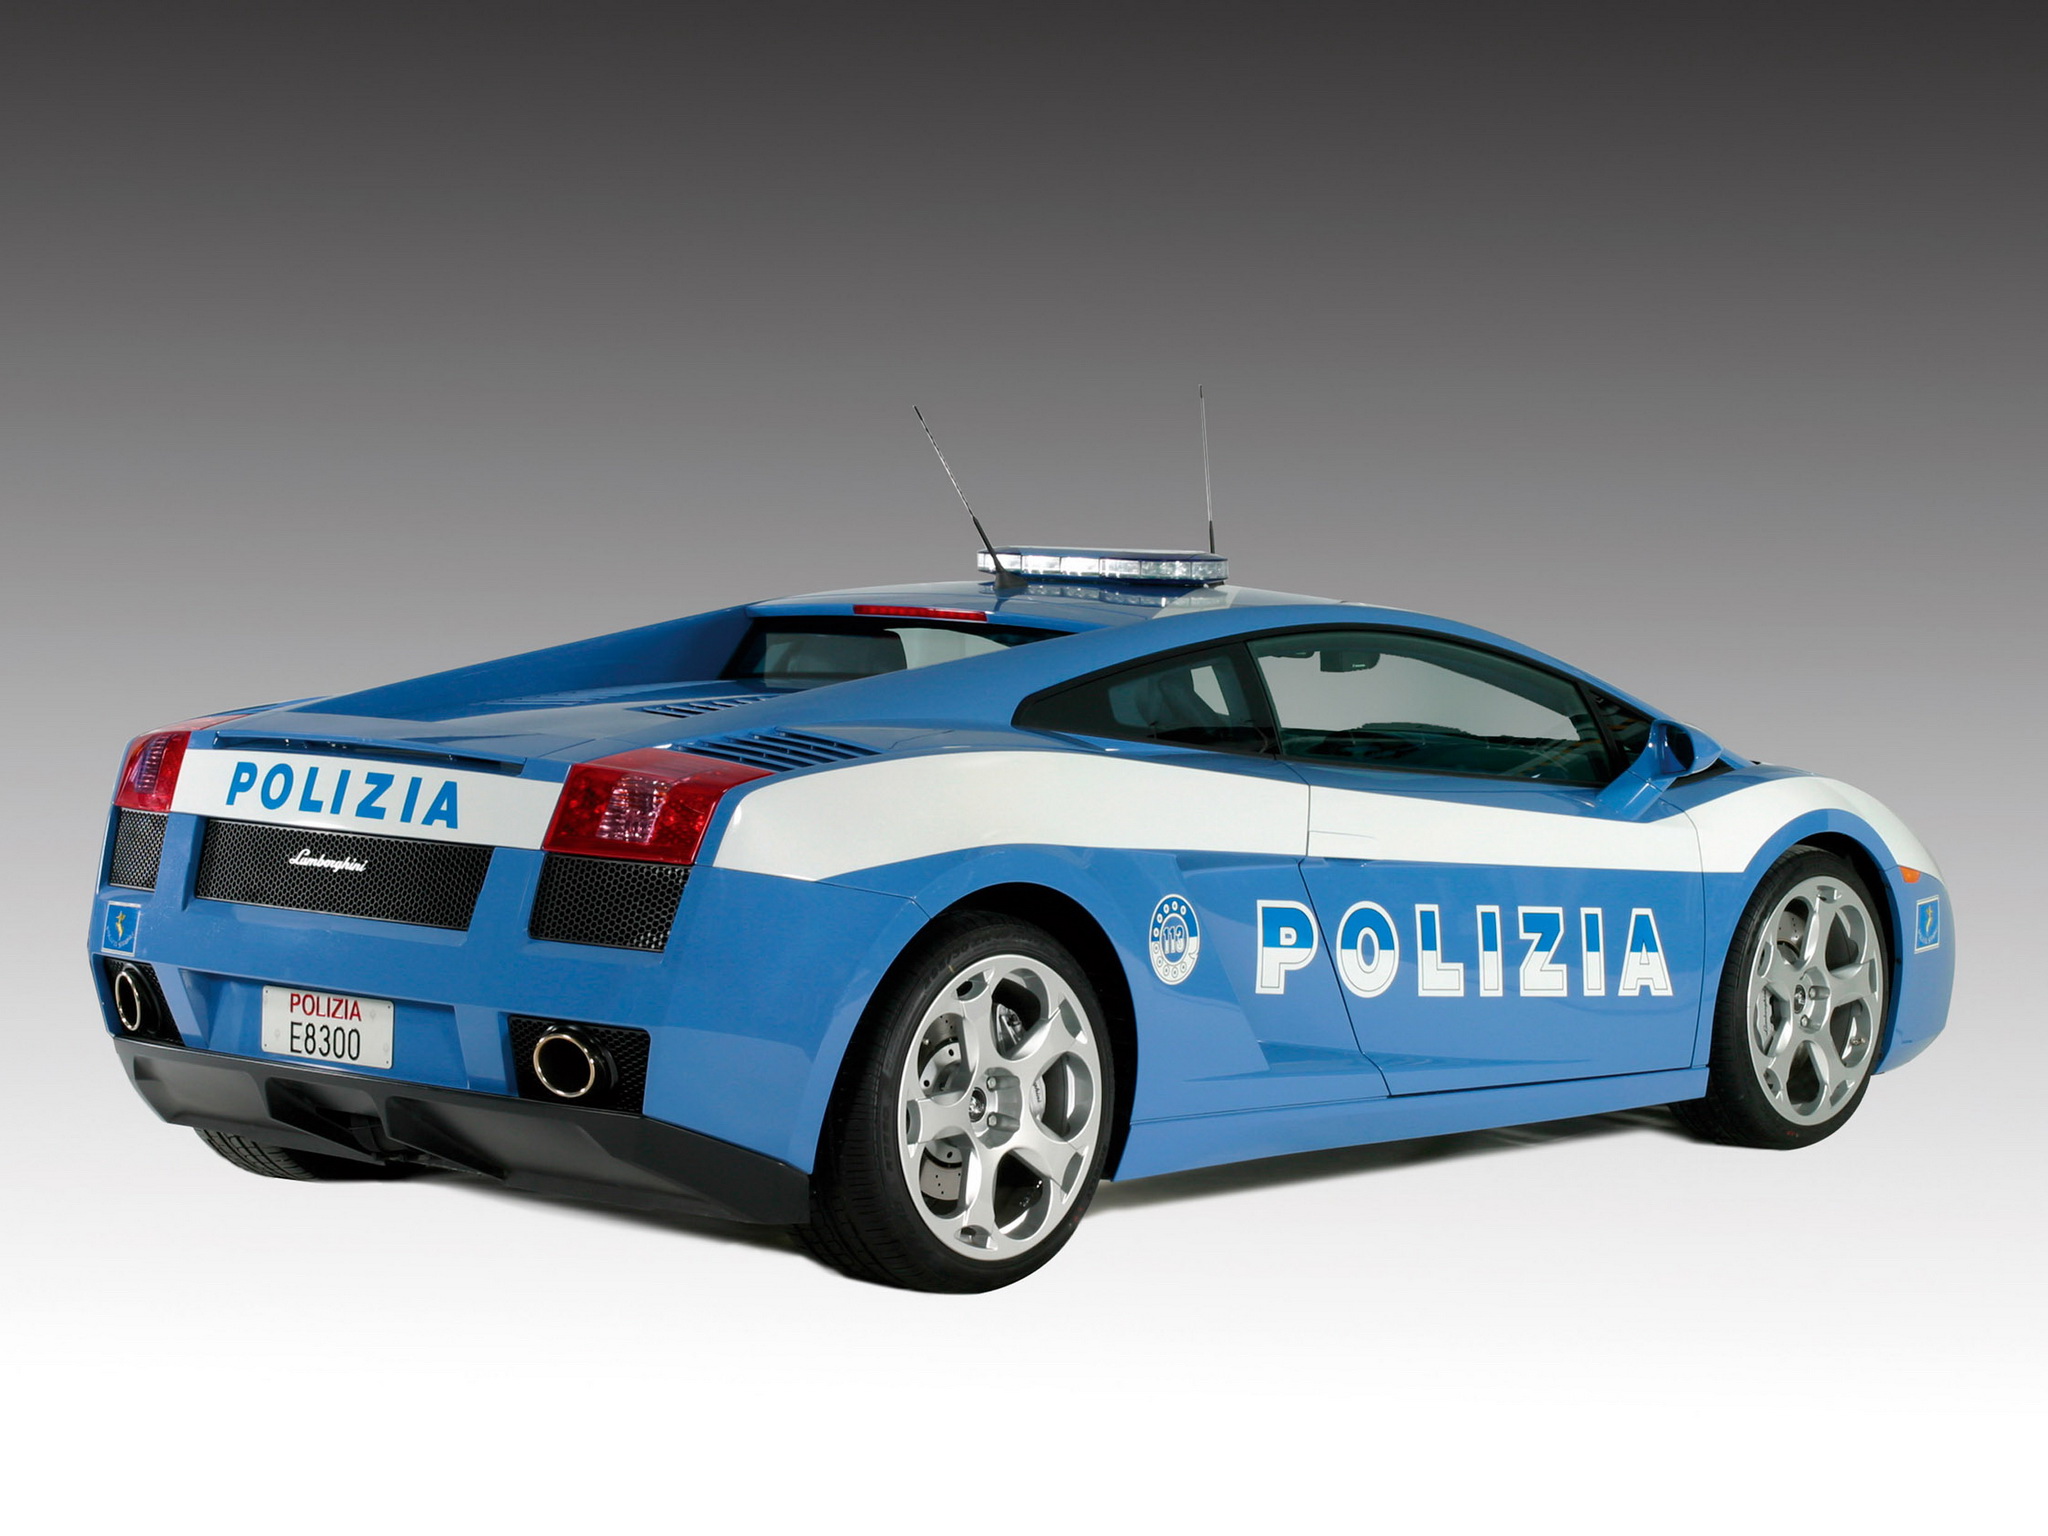 2004, Lamborghini, Gallardo, Polizia, Police, Supercar, Supercars Wallpaper